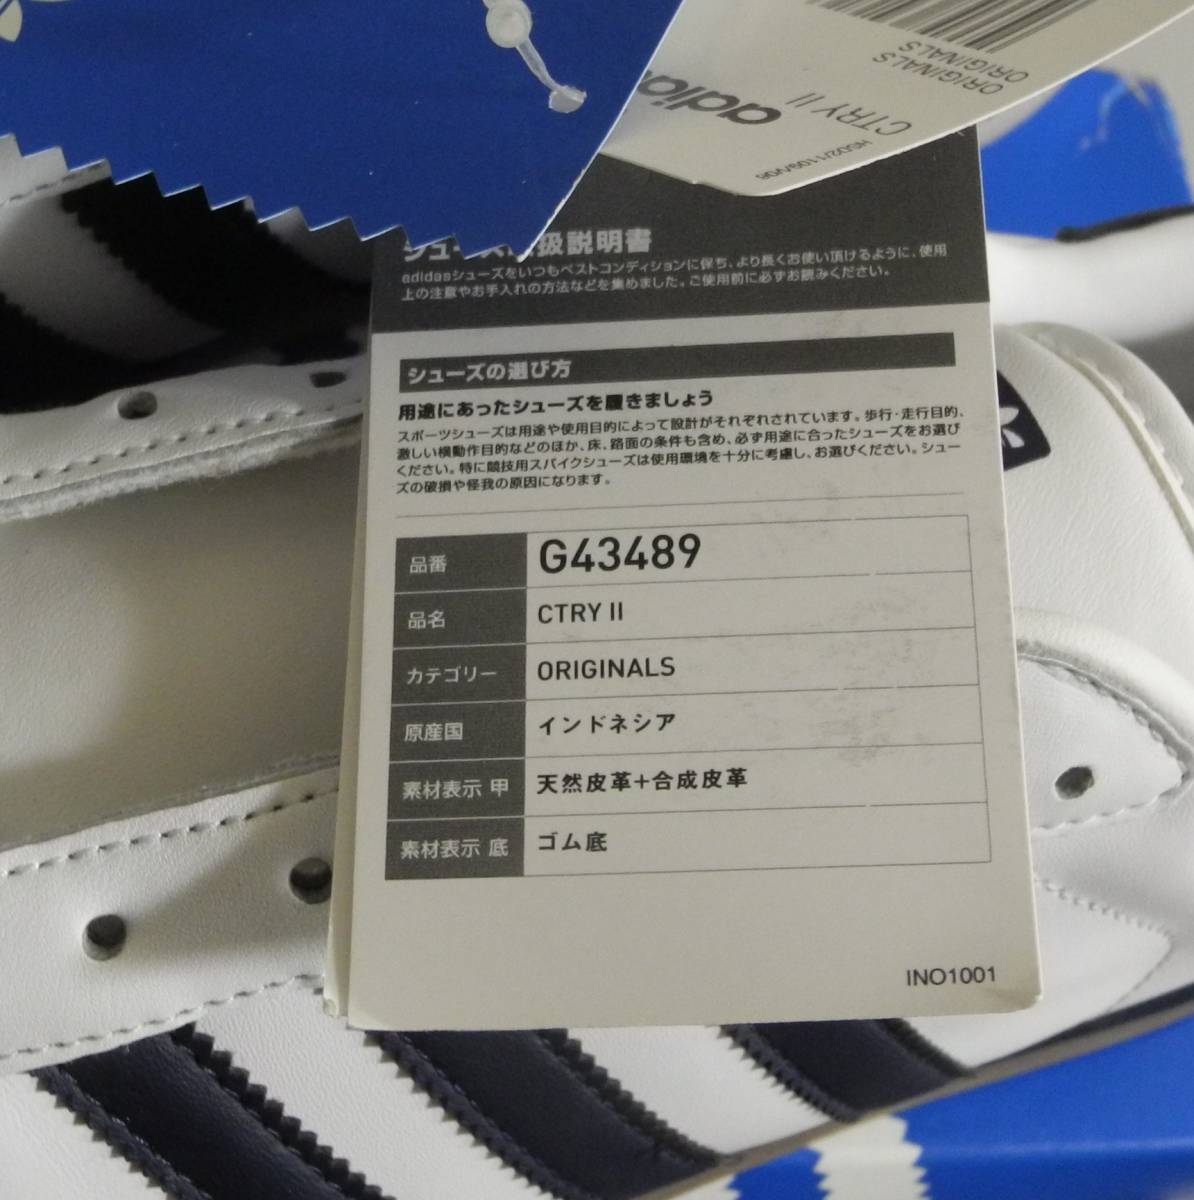  новый товар Country 2012 год производства JP27.5cm белый × темно-синий G43489 производство конец натуральный кожа adidas country белый × темно-синий натуральная кожа 